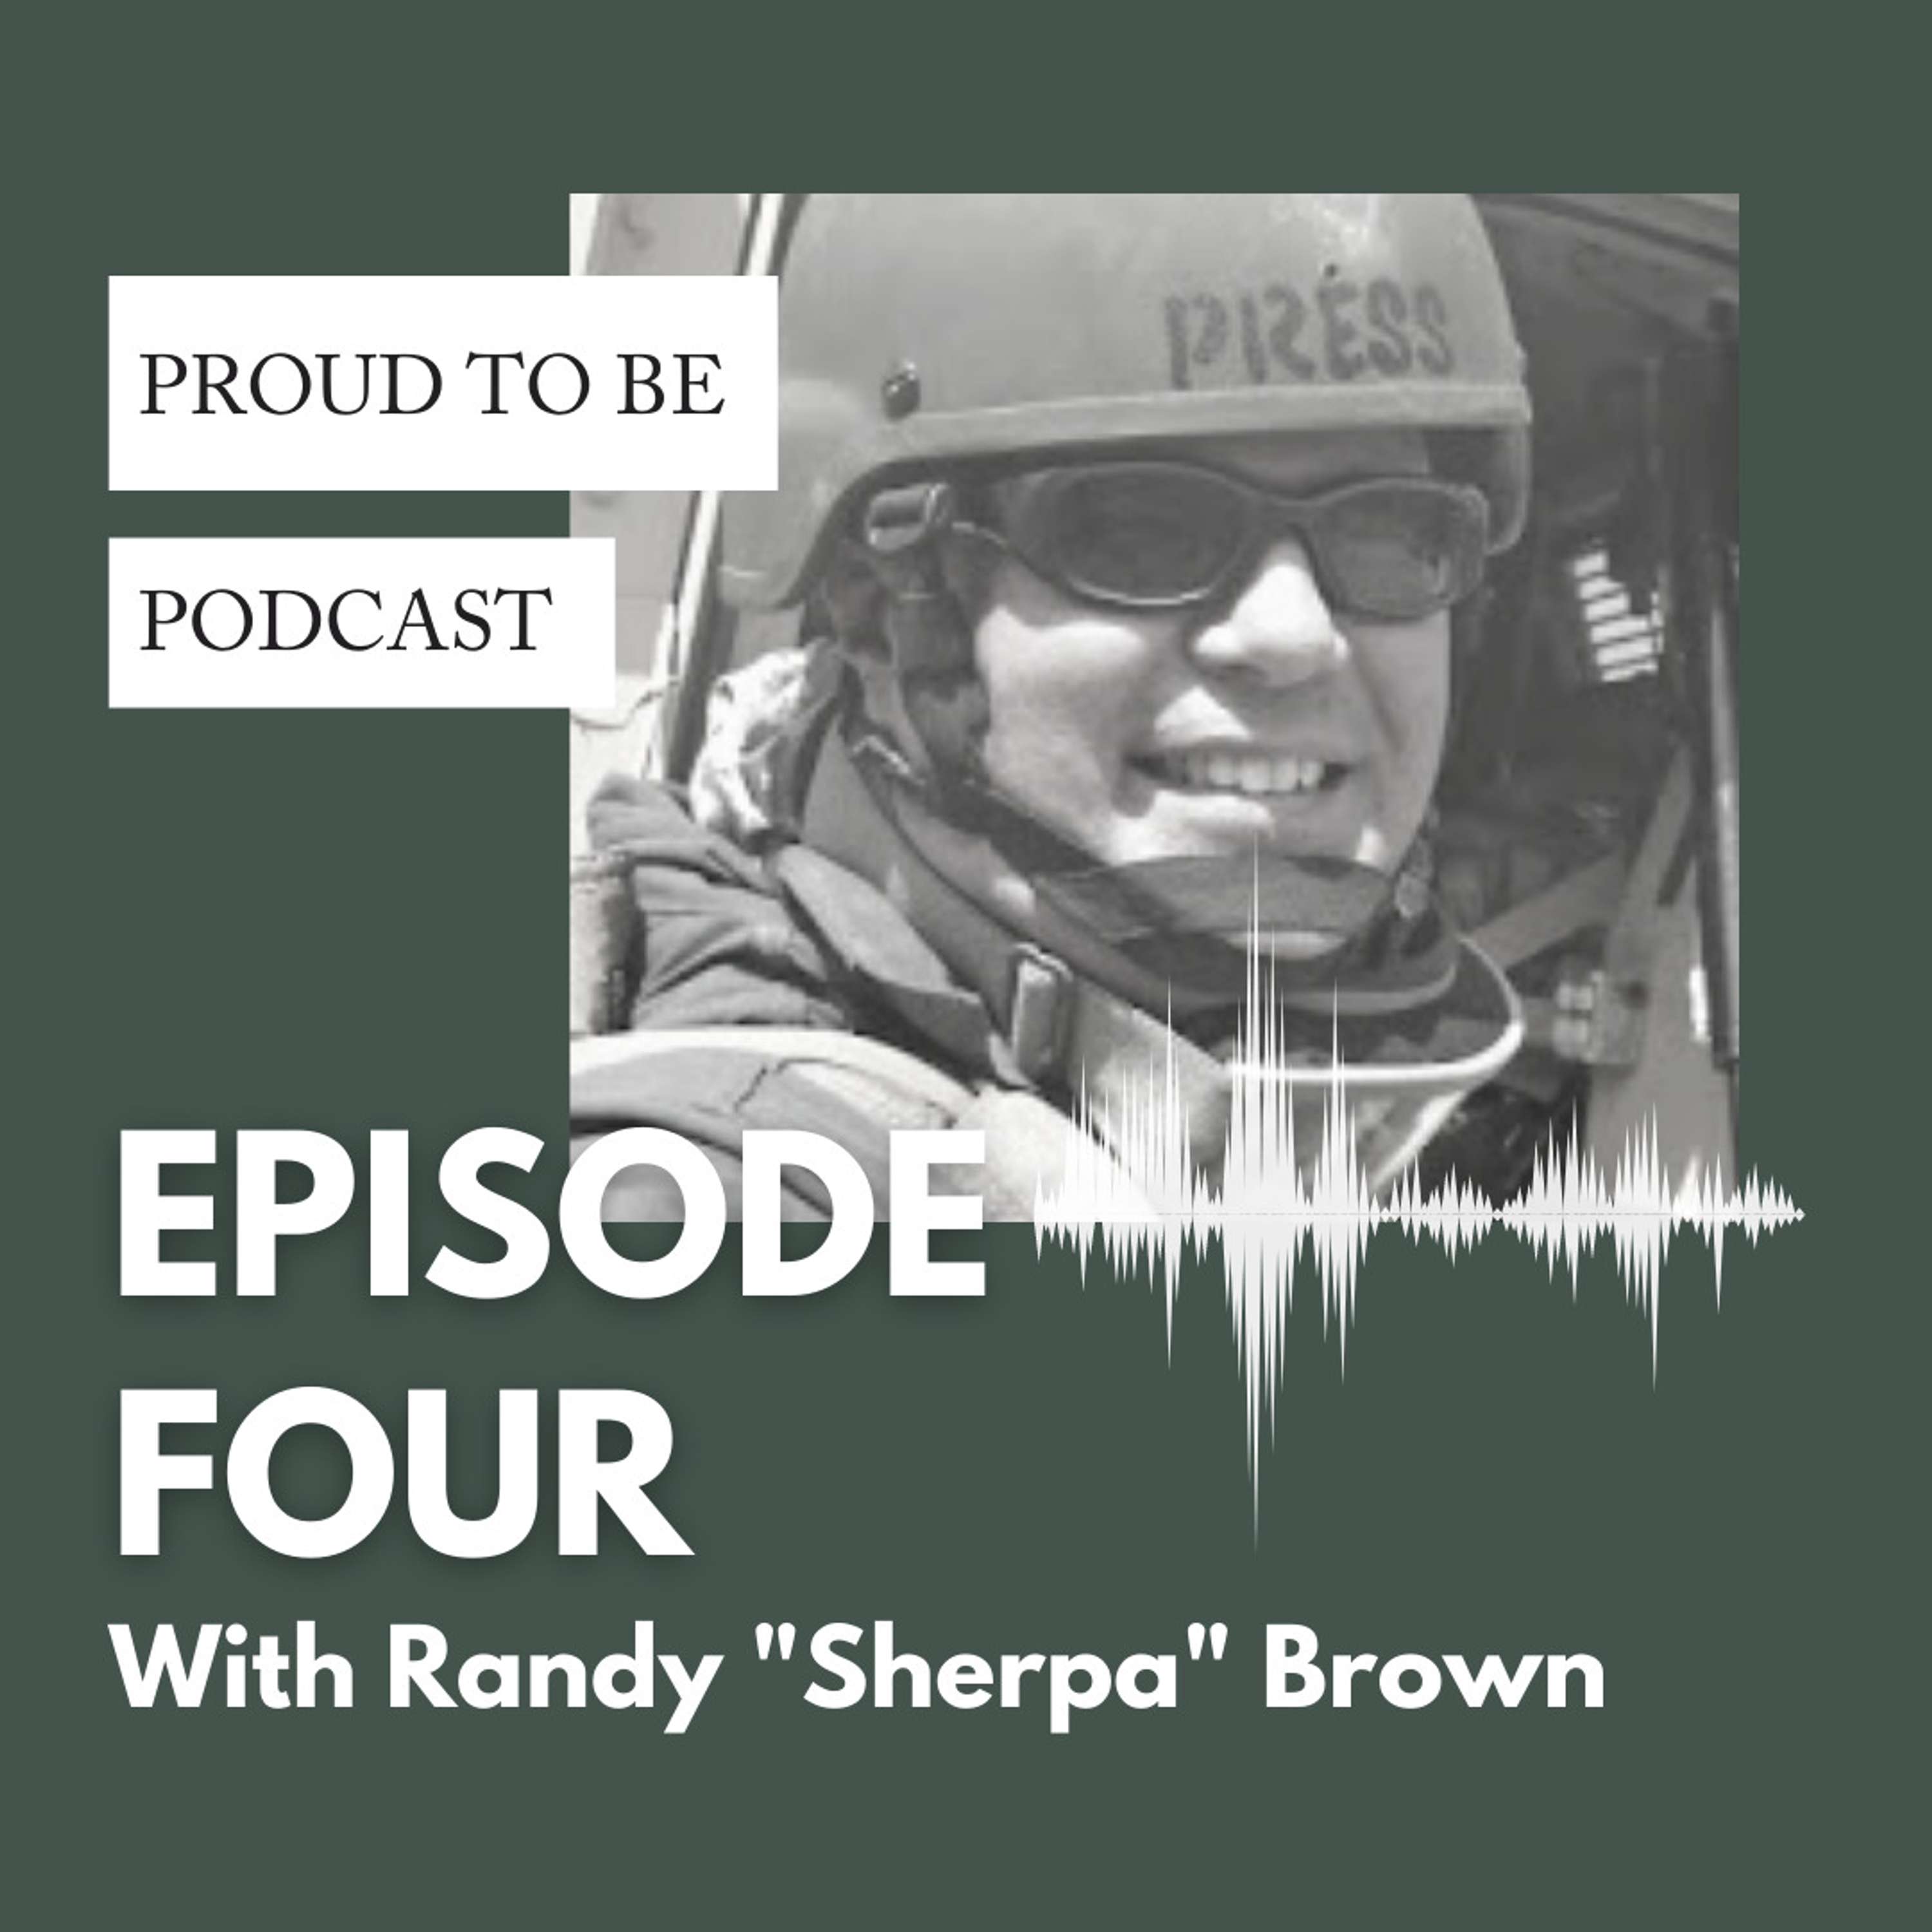 Randy “Sherpa” Brown